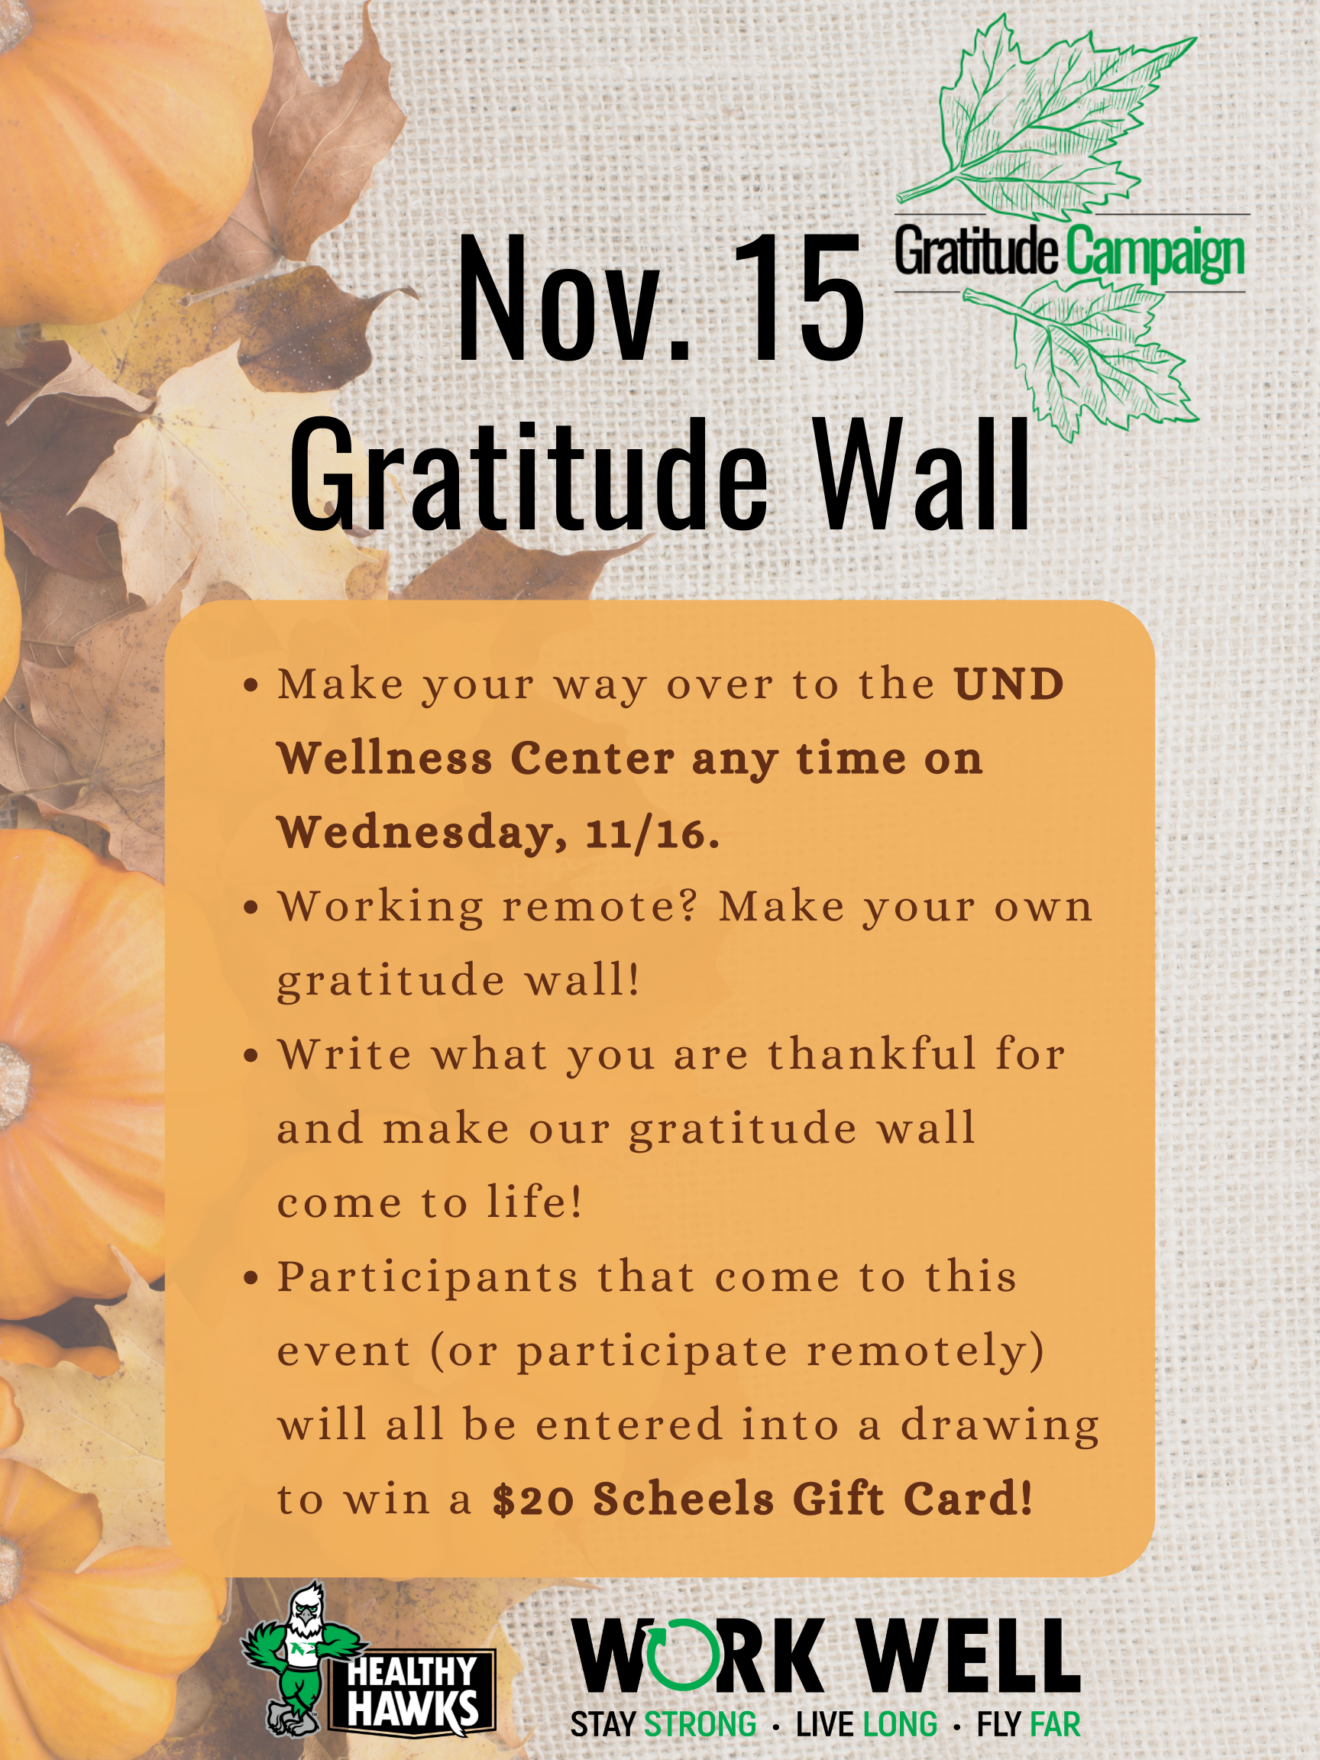 Fall 2022 Gratitude Campaign KW